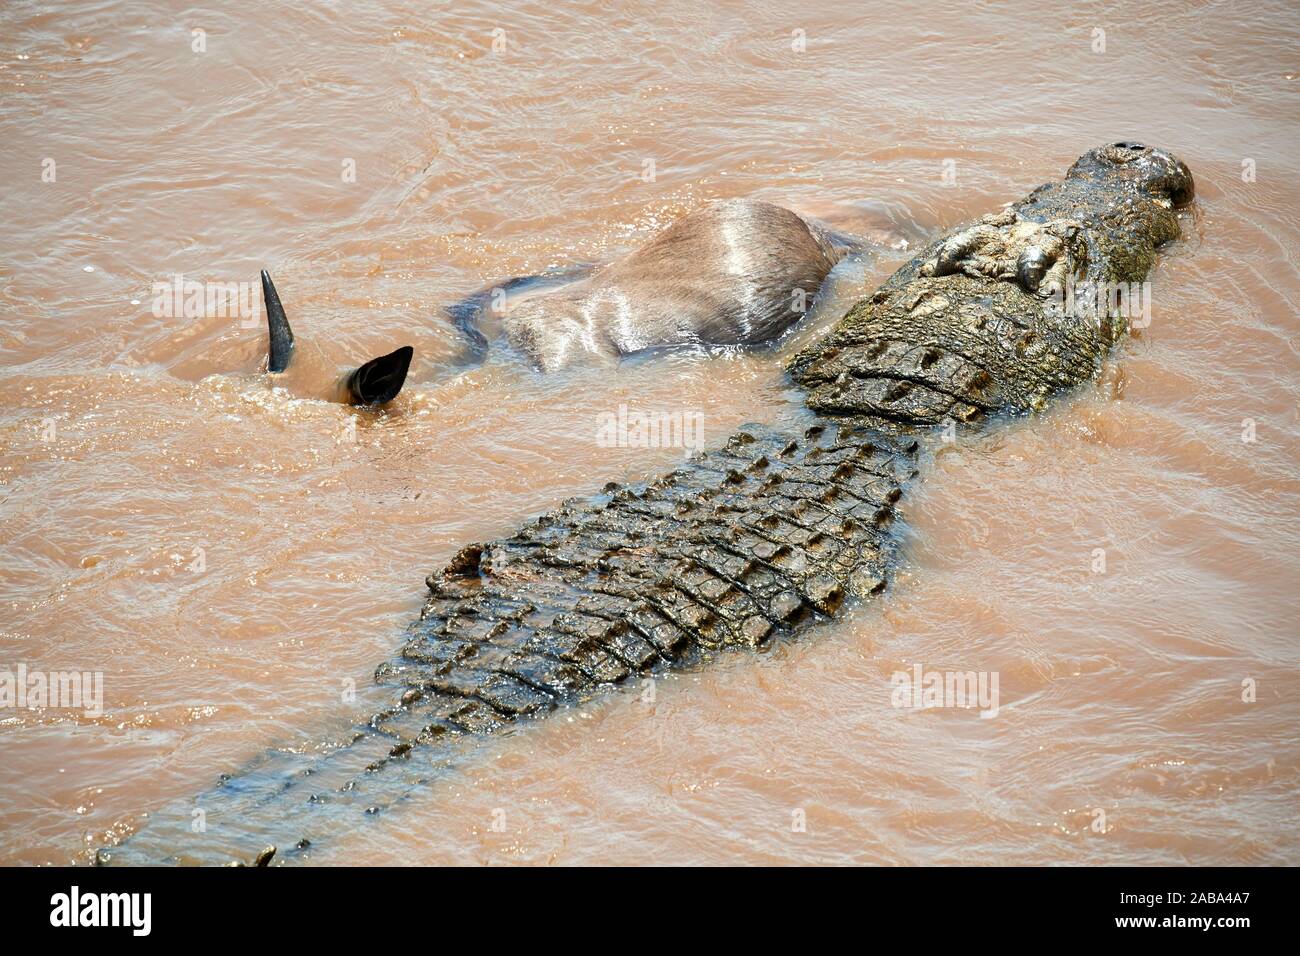 El cocodrilo del Nilo (Crocodylus niloticus) atacan a un ñu (Connochaetes taurinus) que cruza el río Mara. Reserva Nacional de Masai Mara, Kenya. Foto de stock